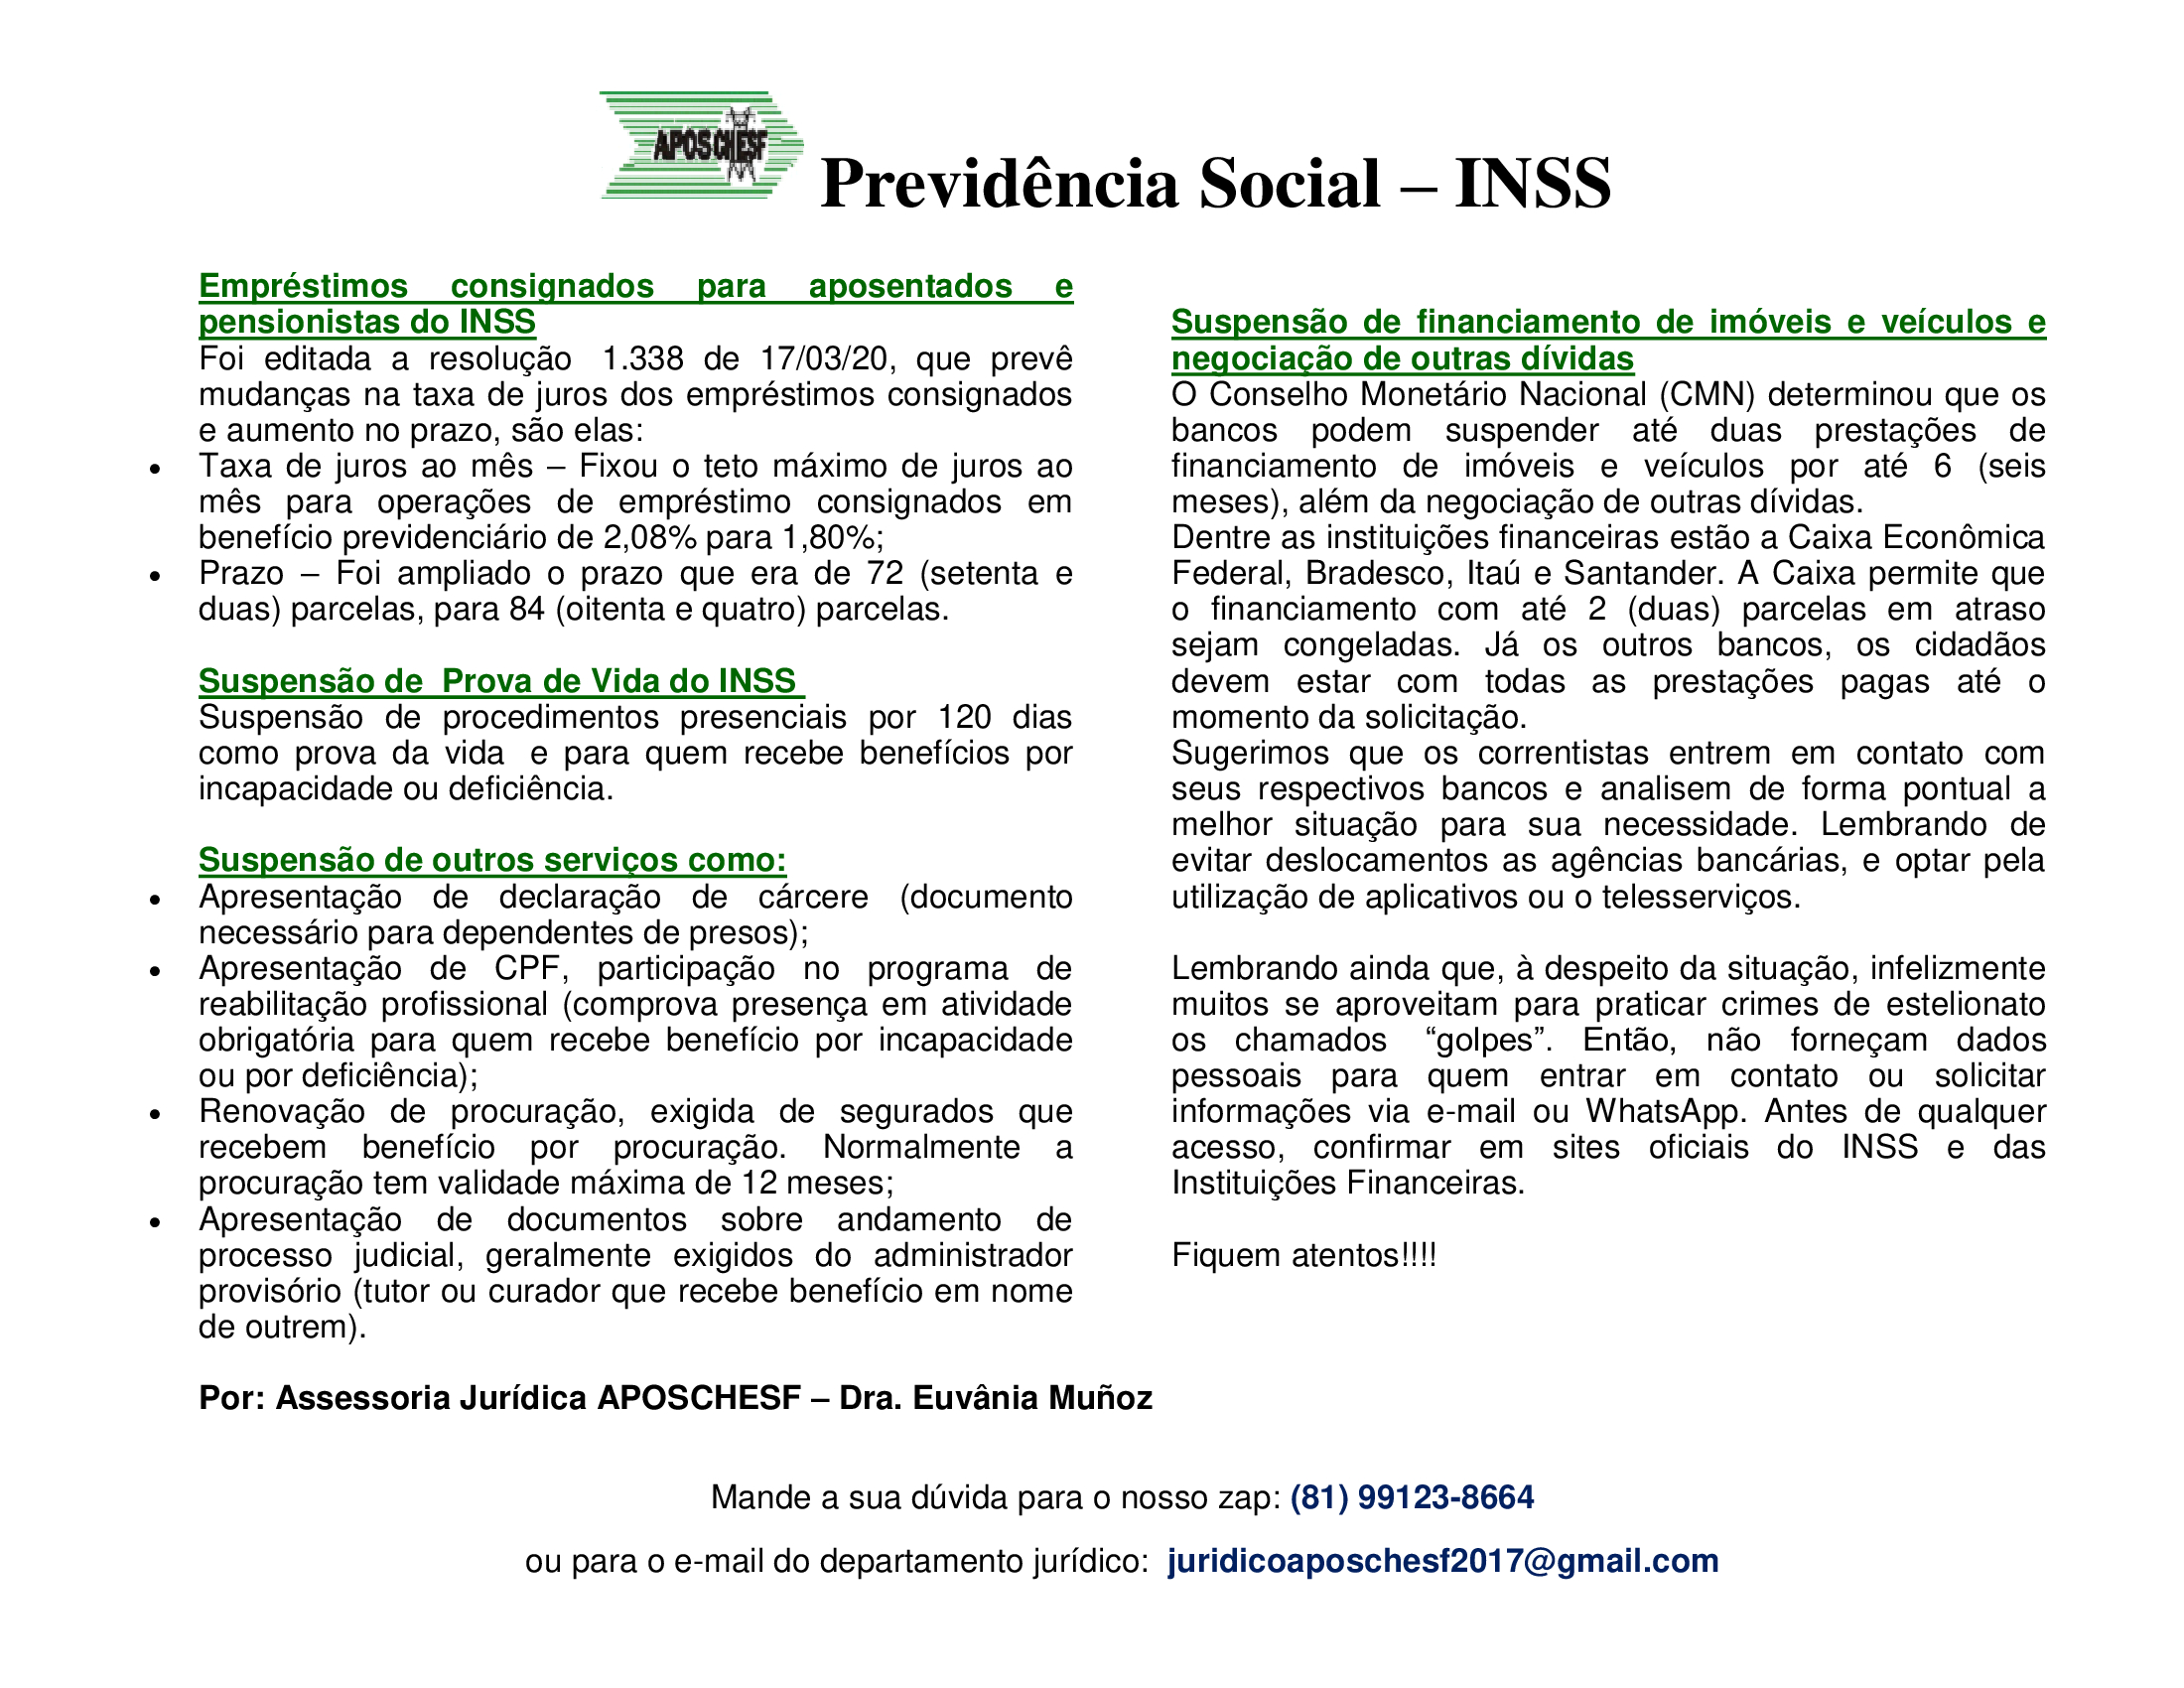 Previdência Social - INSS